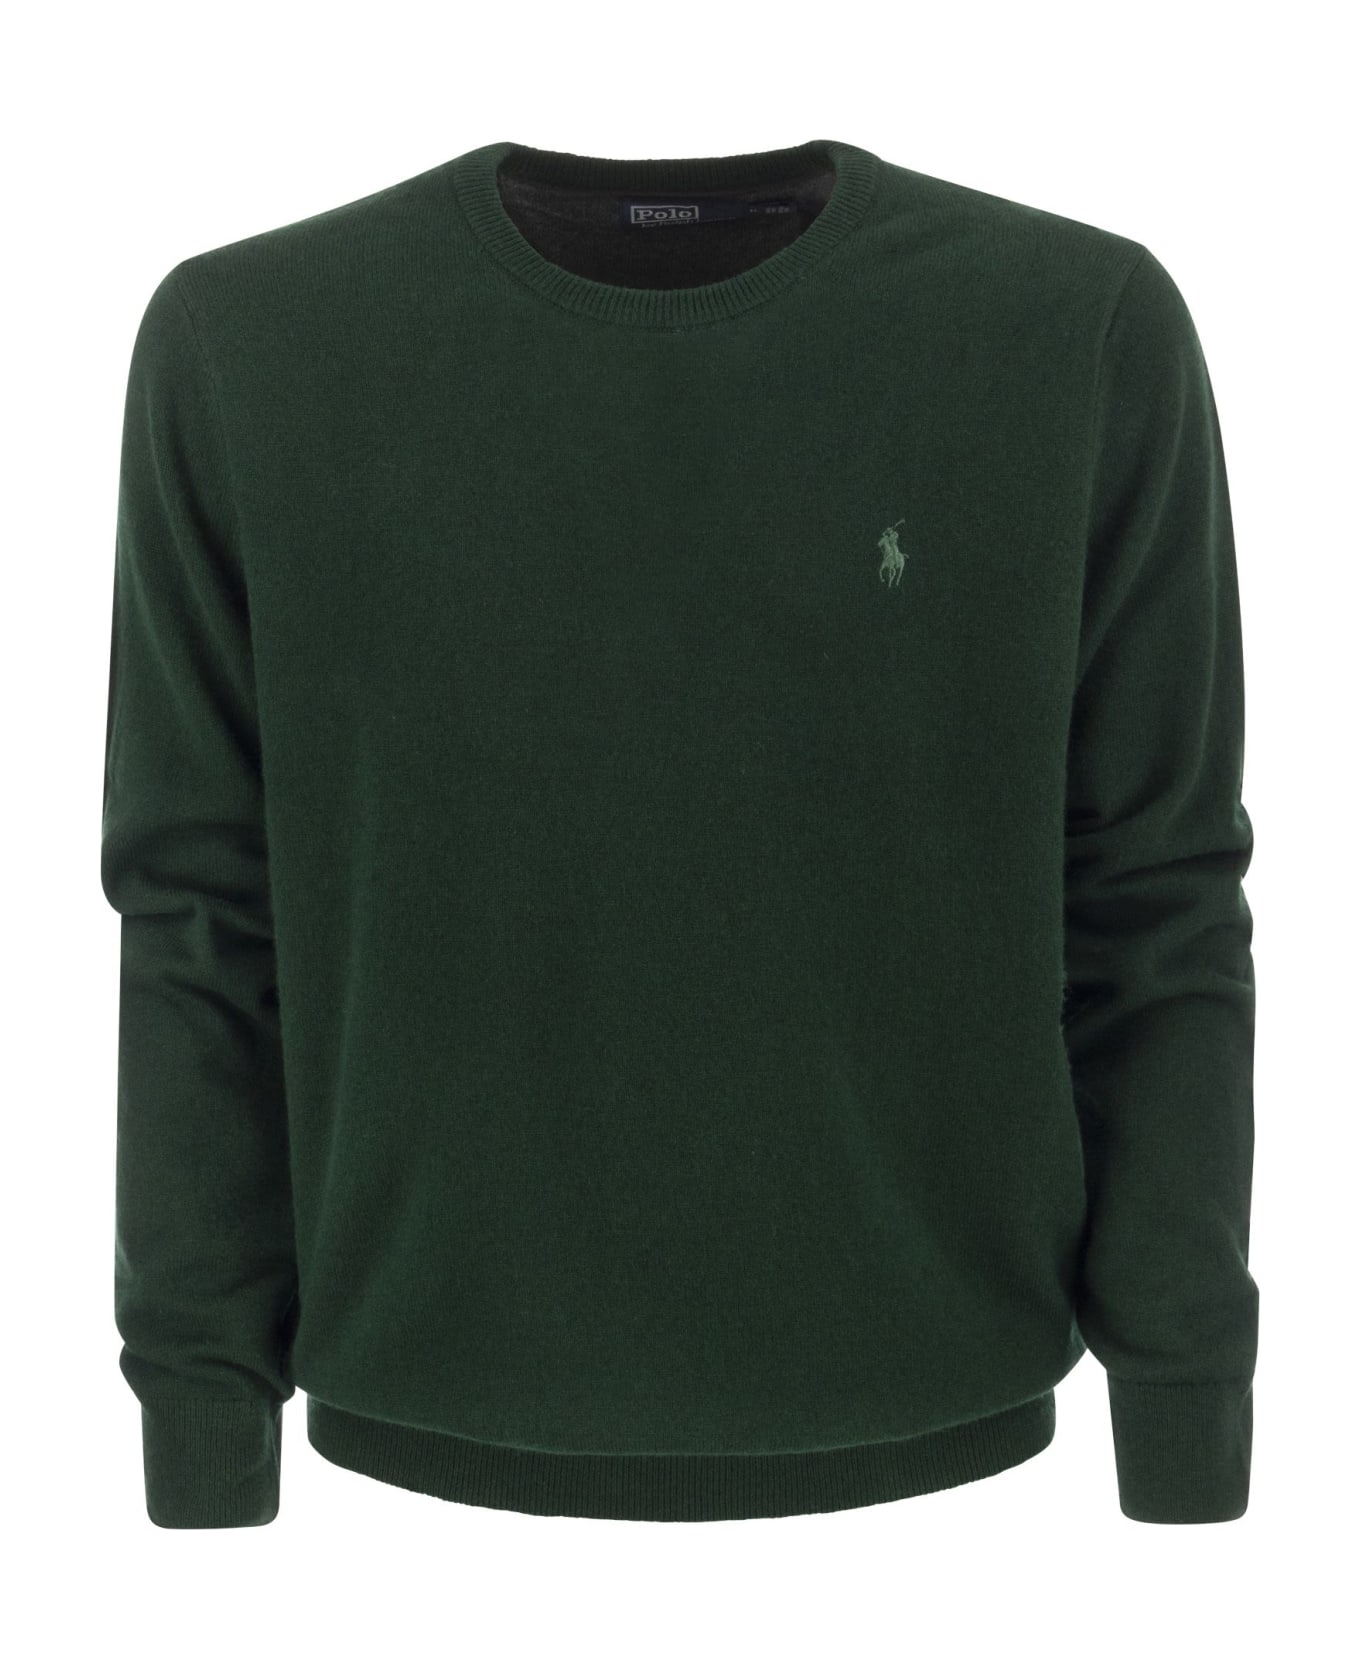 Polo Ralph Lauren Green Wool Sweater - Green